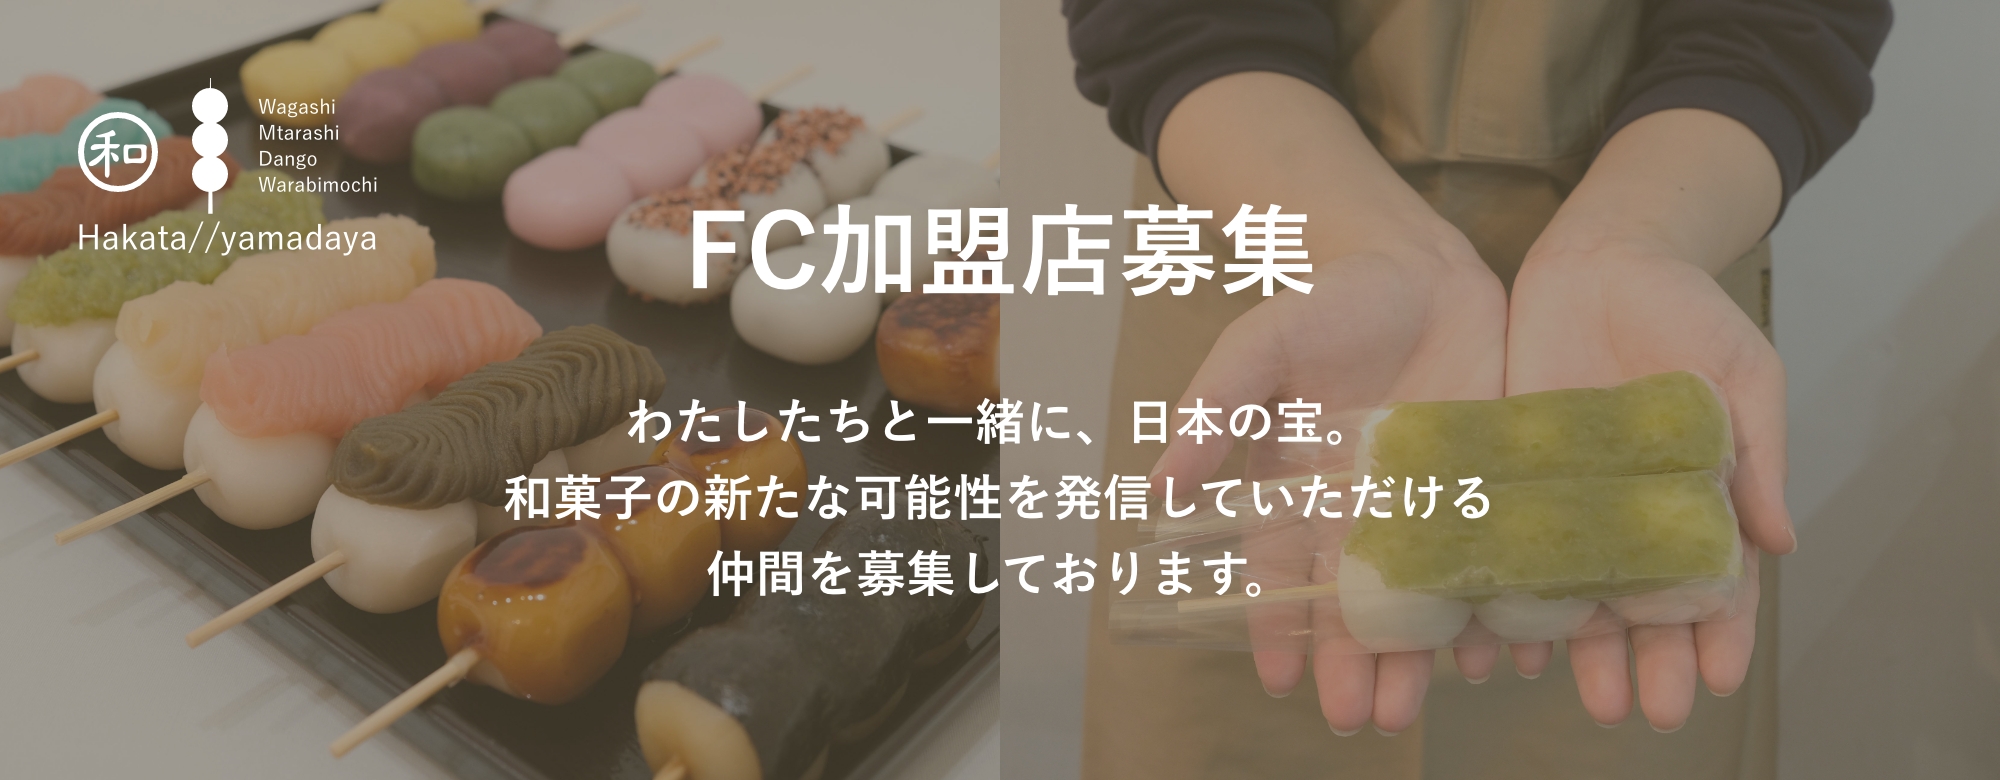 【お知らせ】FC加盟店募集のお知らせ